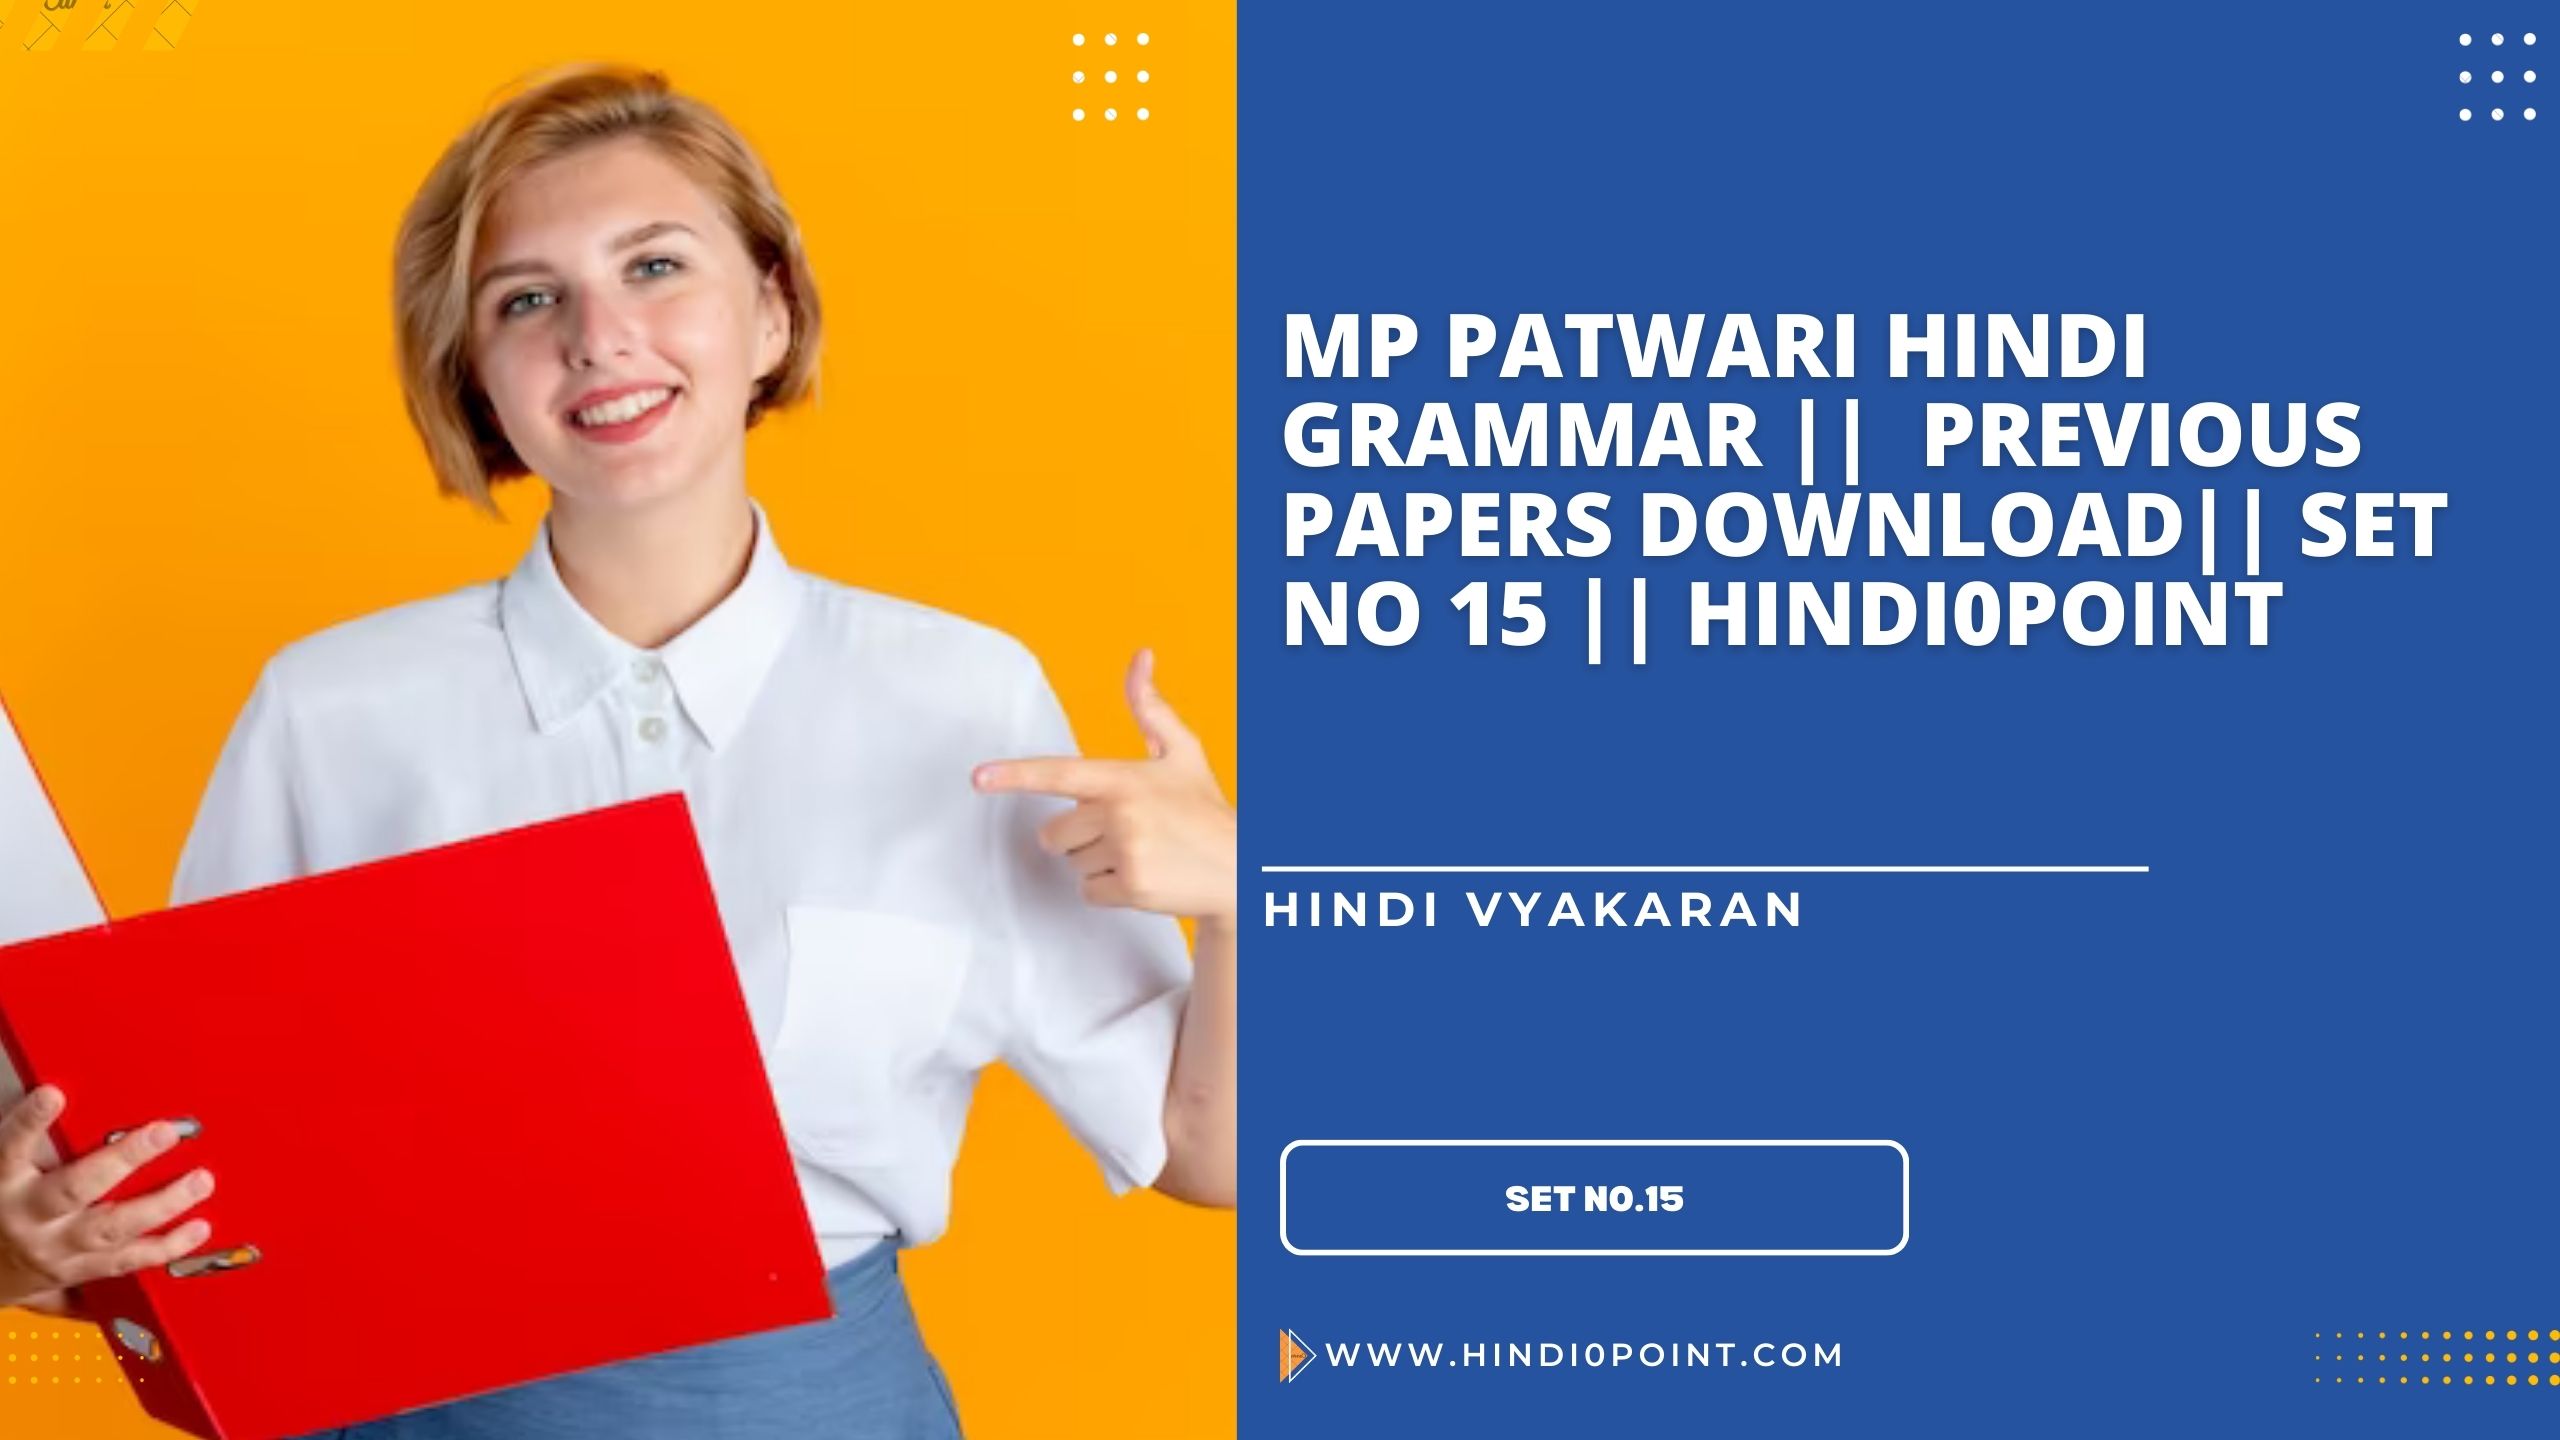 Mp patwari hindi grammar || previous papers download|| set no 15 || hindi0point